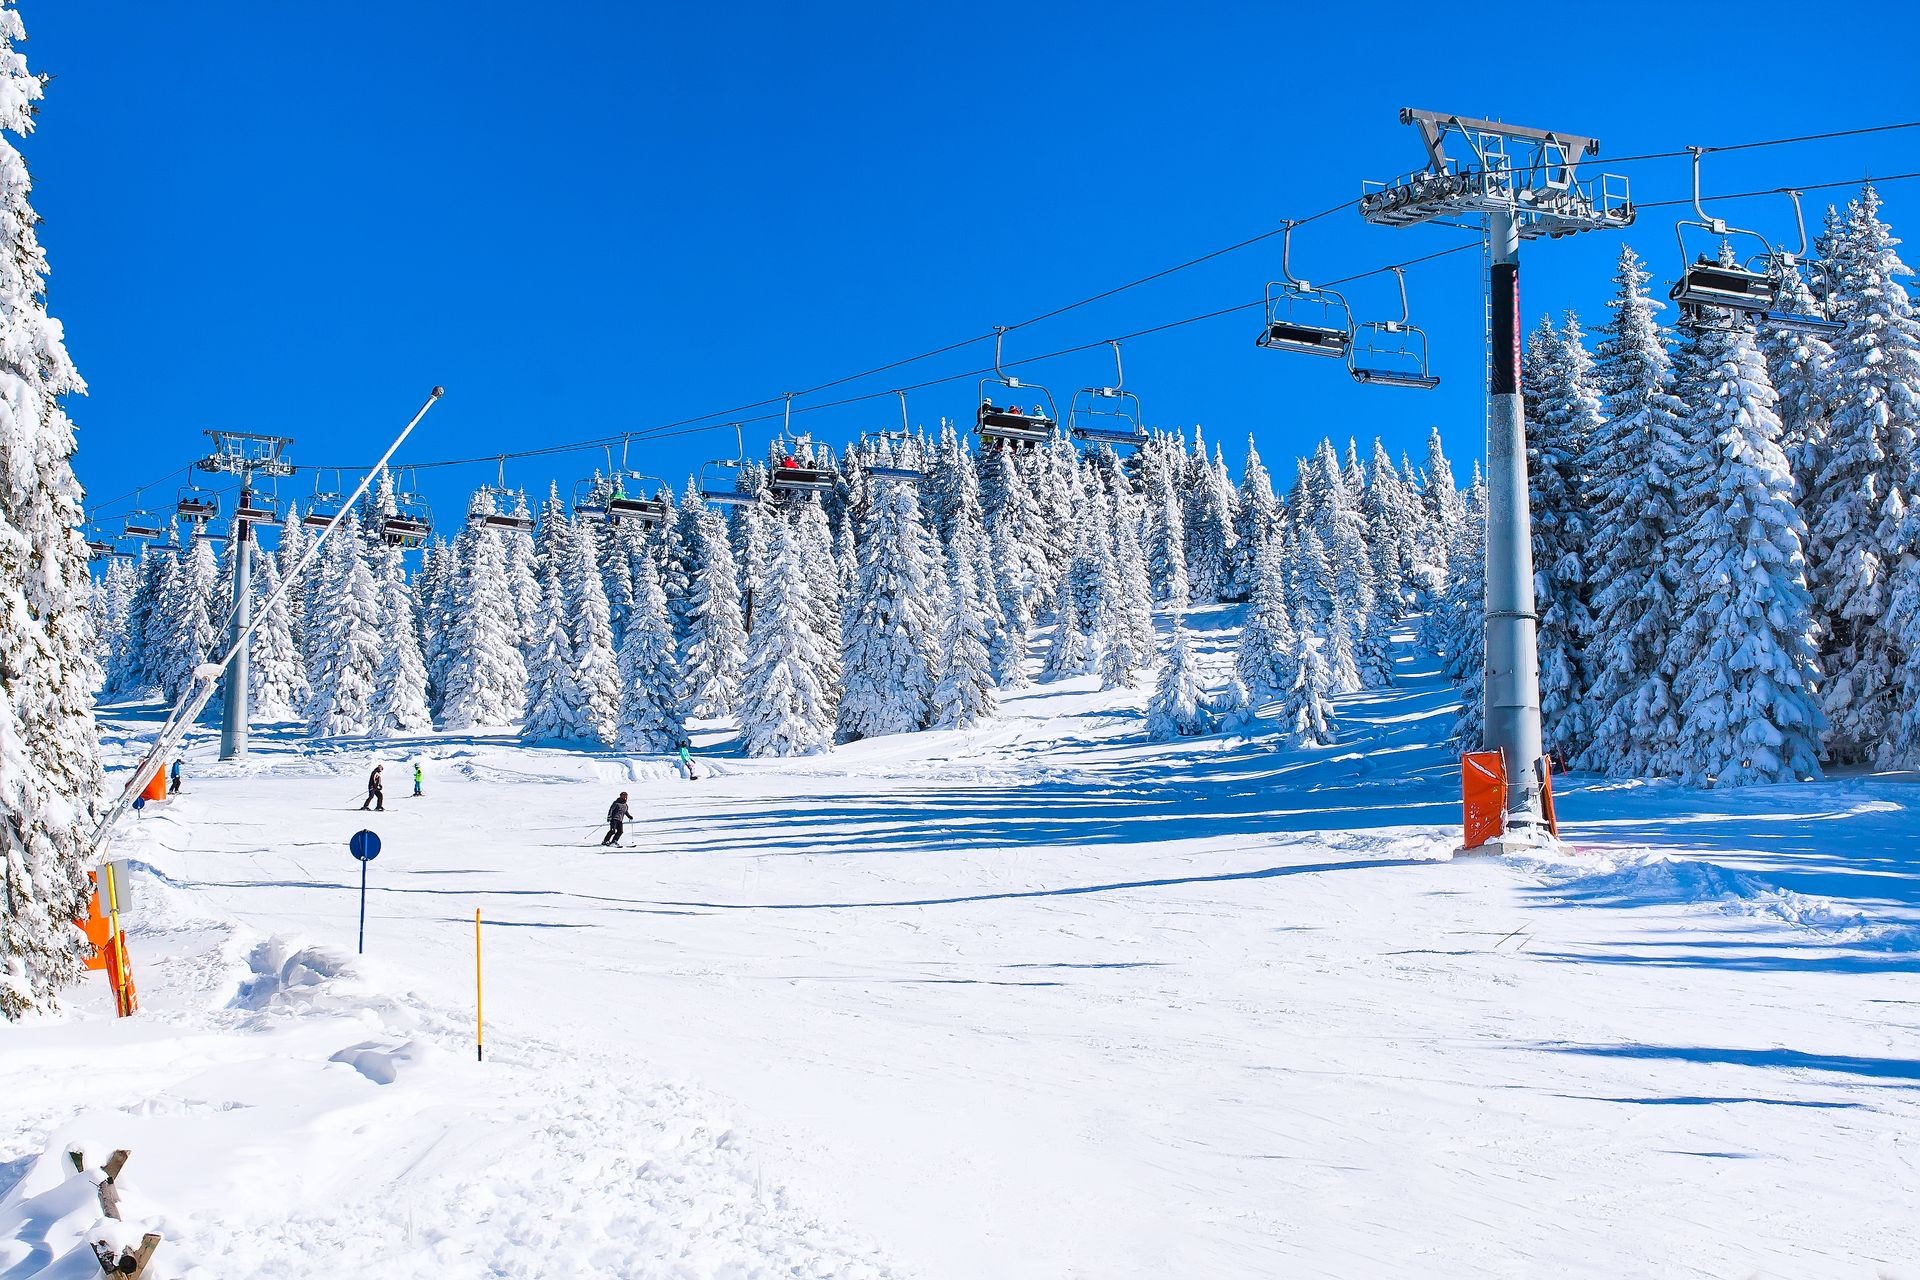 Ski resort Kopaonik, Serbia, ski slope, people on the ski lift, skiers on the slope